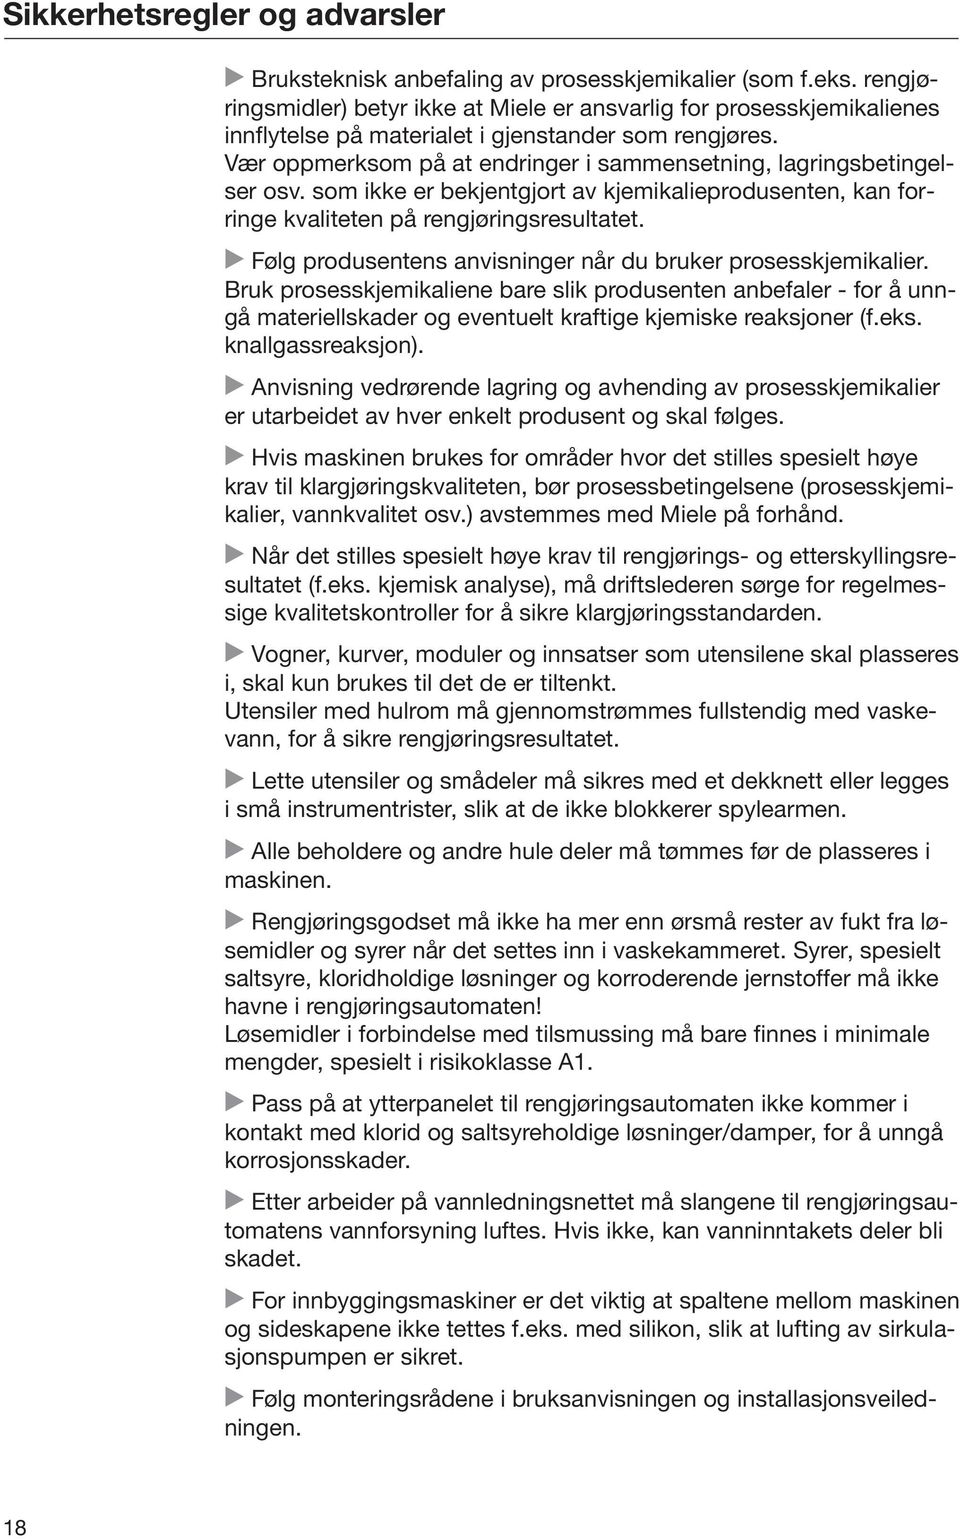 Bruksanvisning Rengjørings- og desinfeksjonsautomat for ...